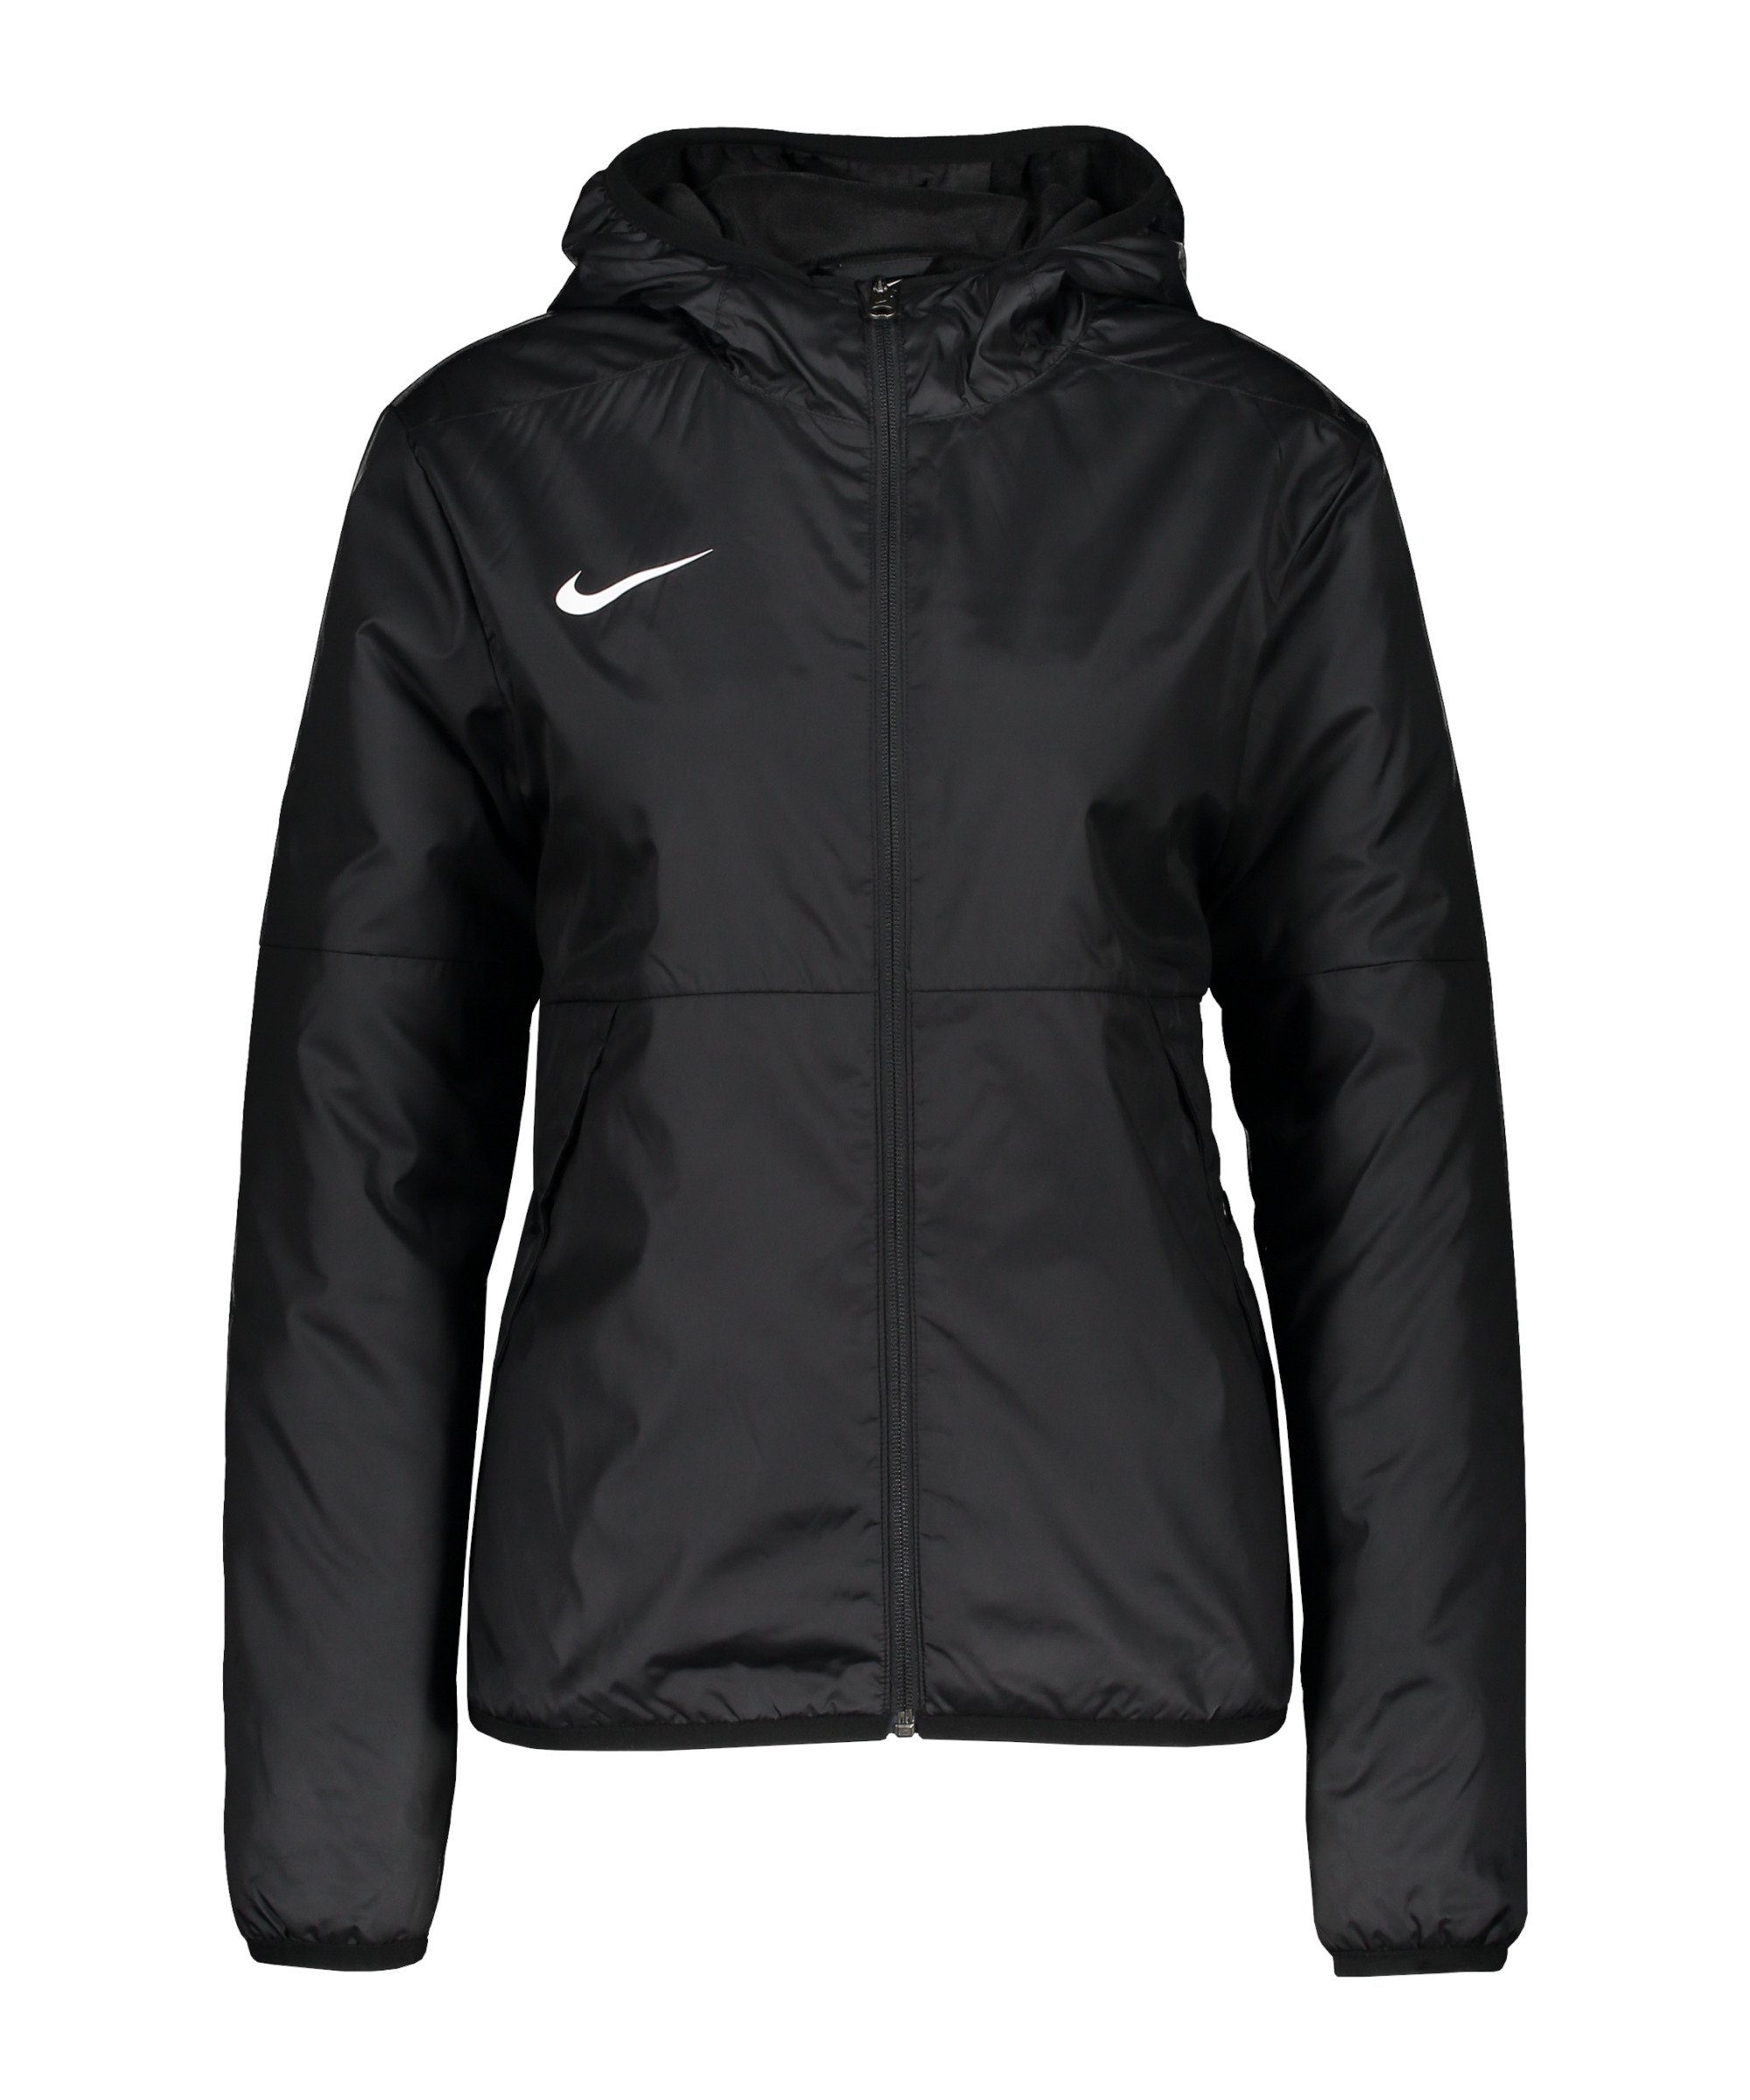 Regenjacke Trainingsjacke Repel Damen schwarzweiss Park Nike 20